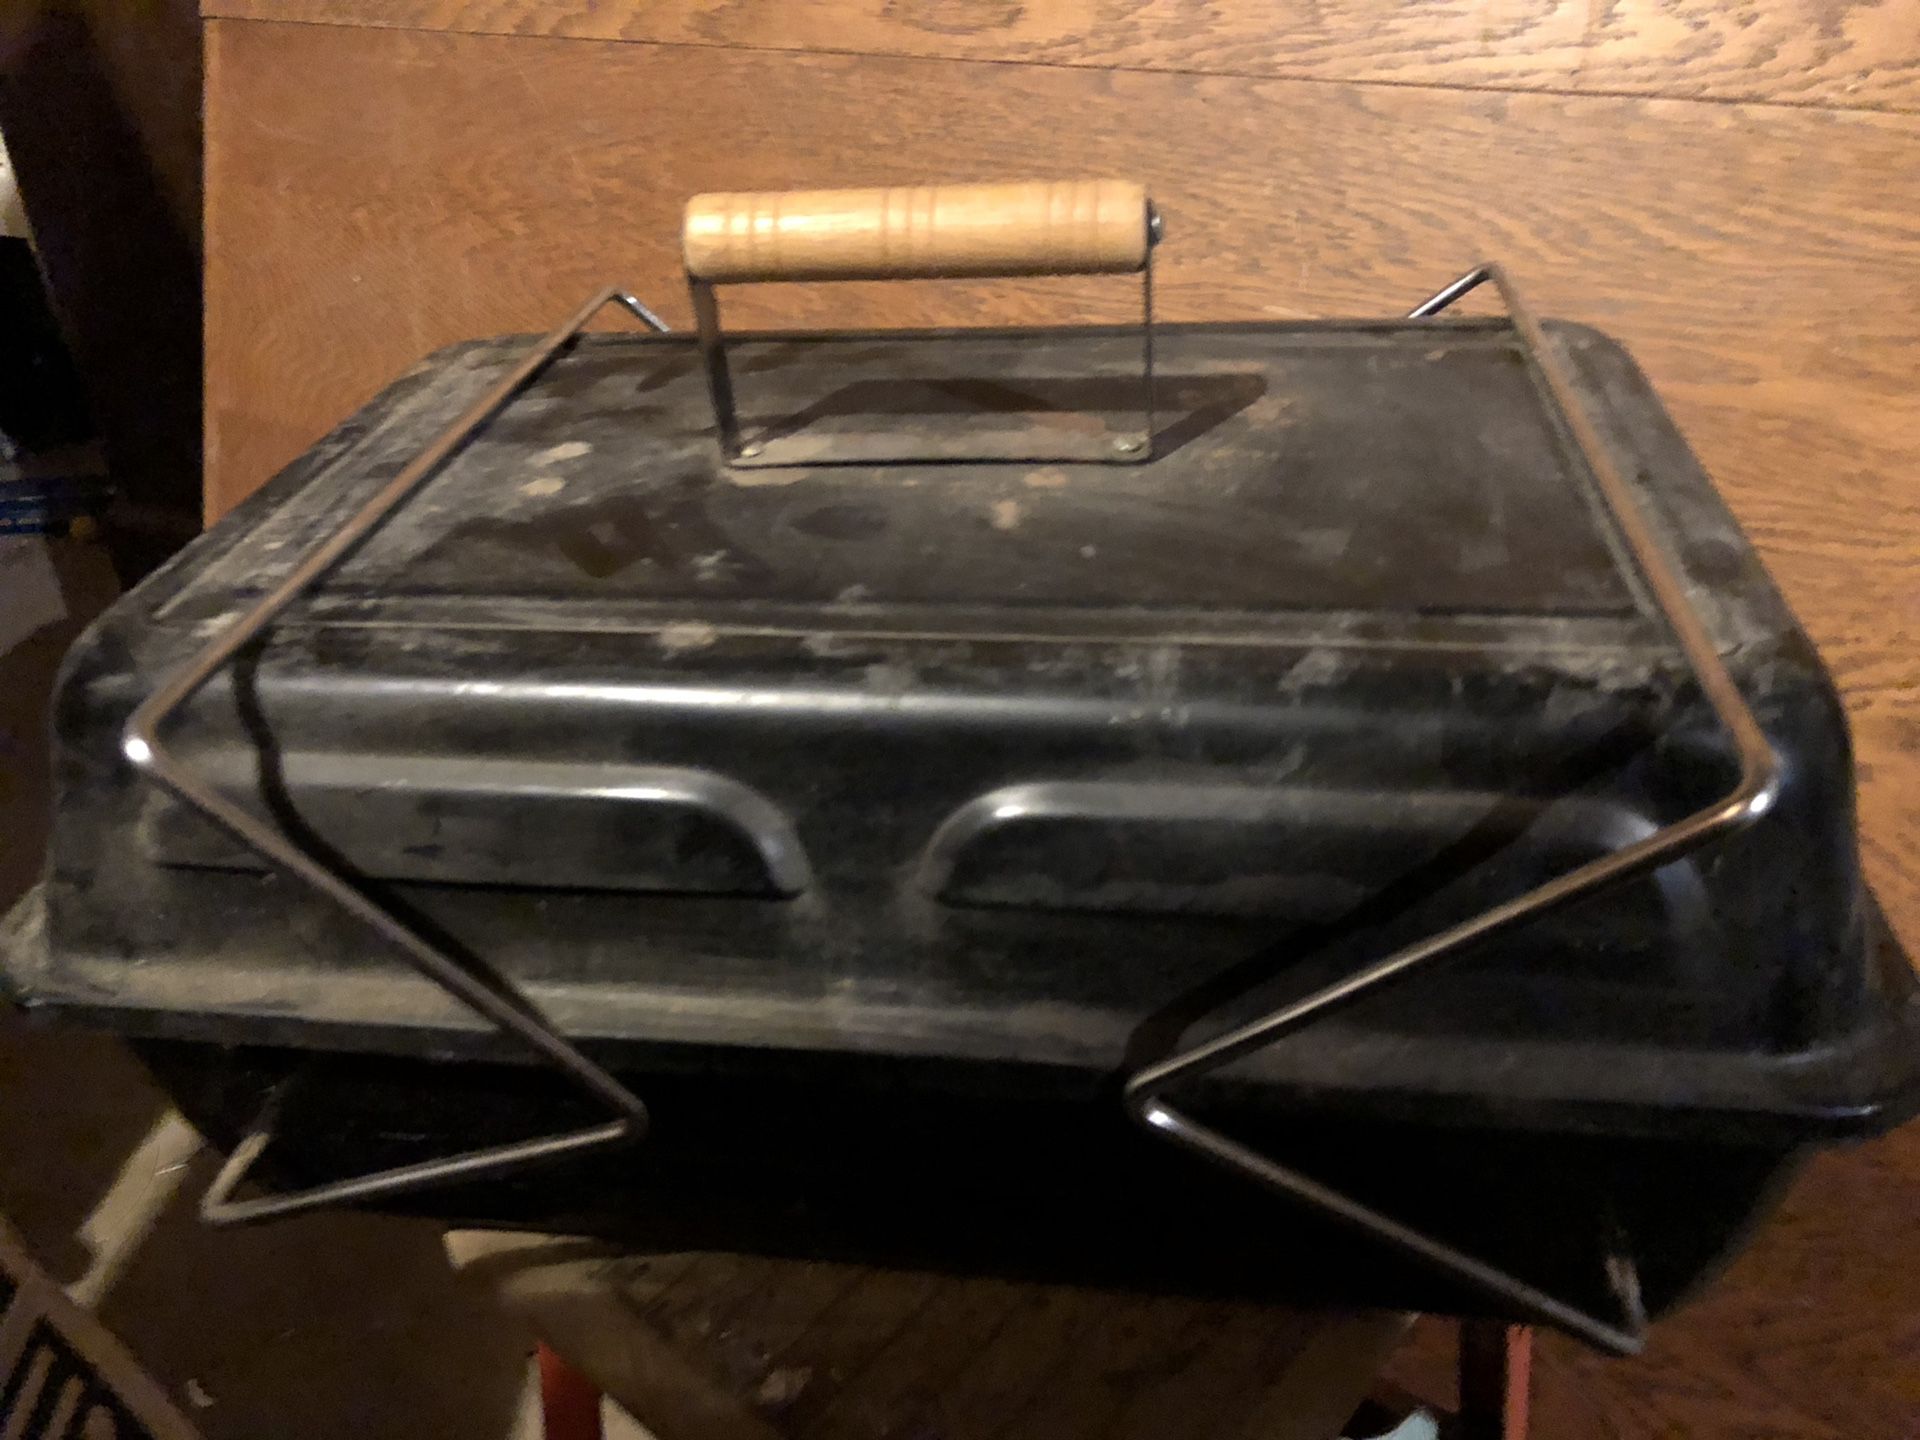 Portable propane grill